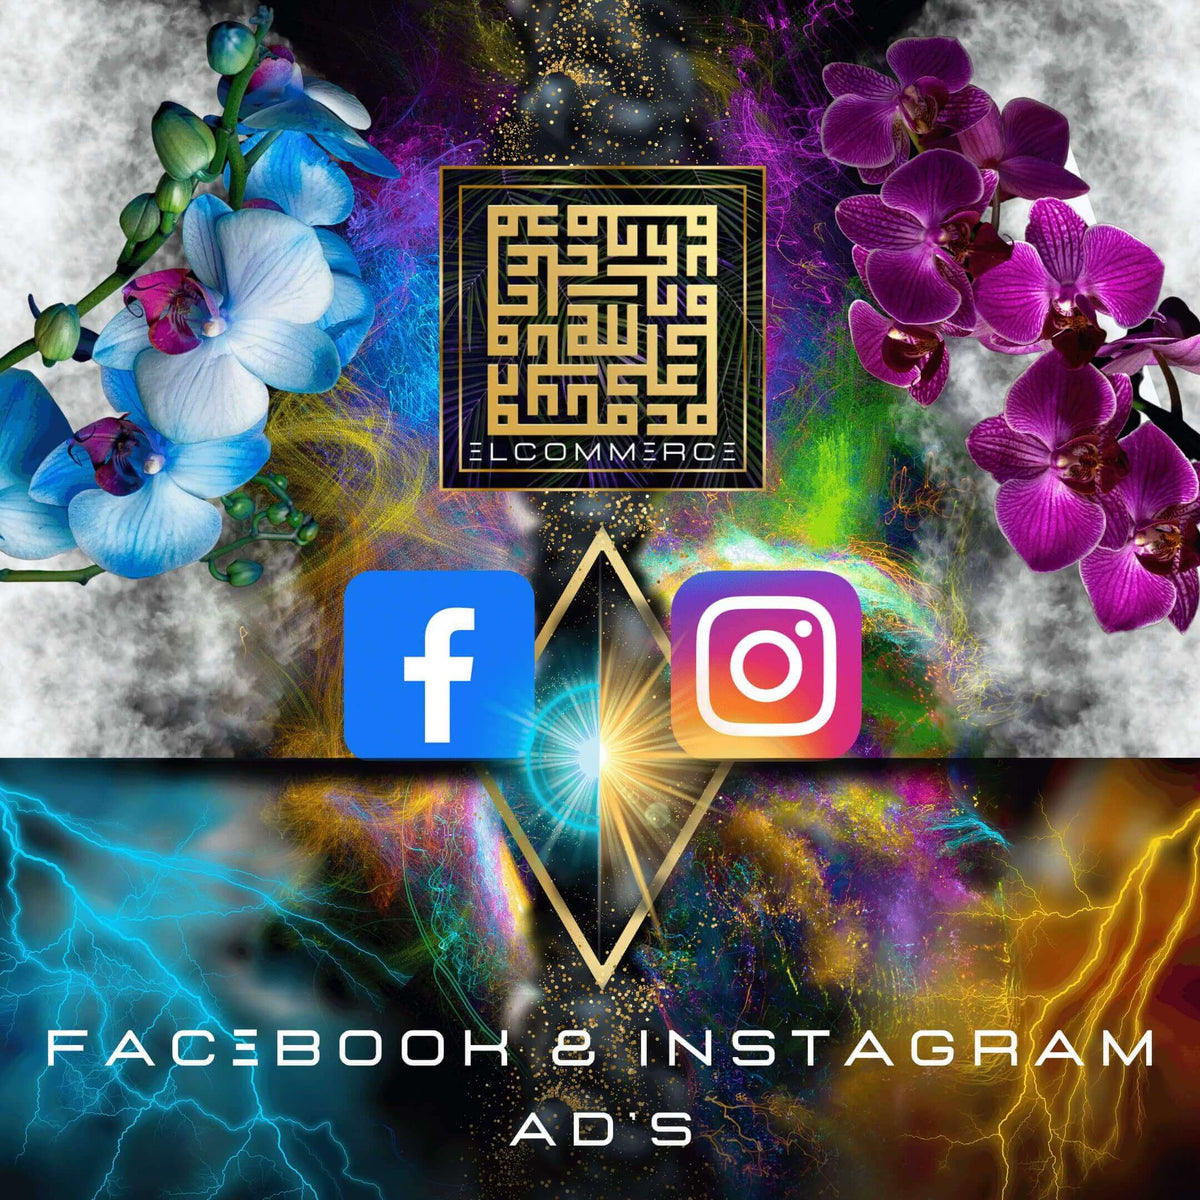 Facebook & Instagram Ads Elcommerce bezahlte Werbeanzeigen mit Facebook und Instagram